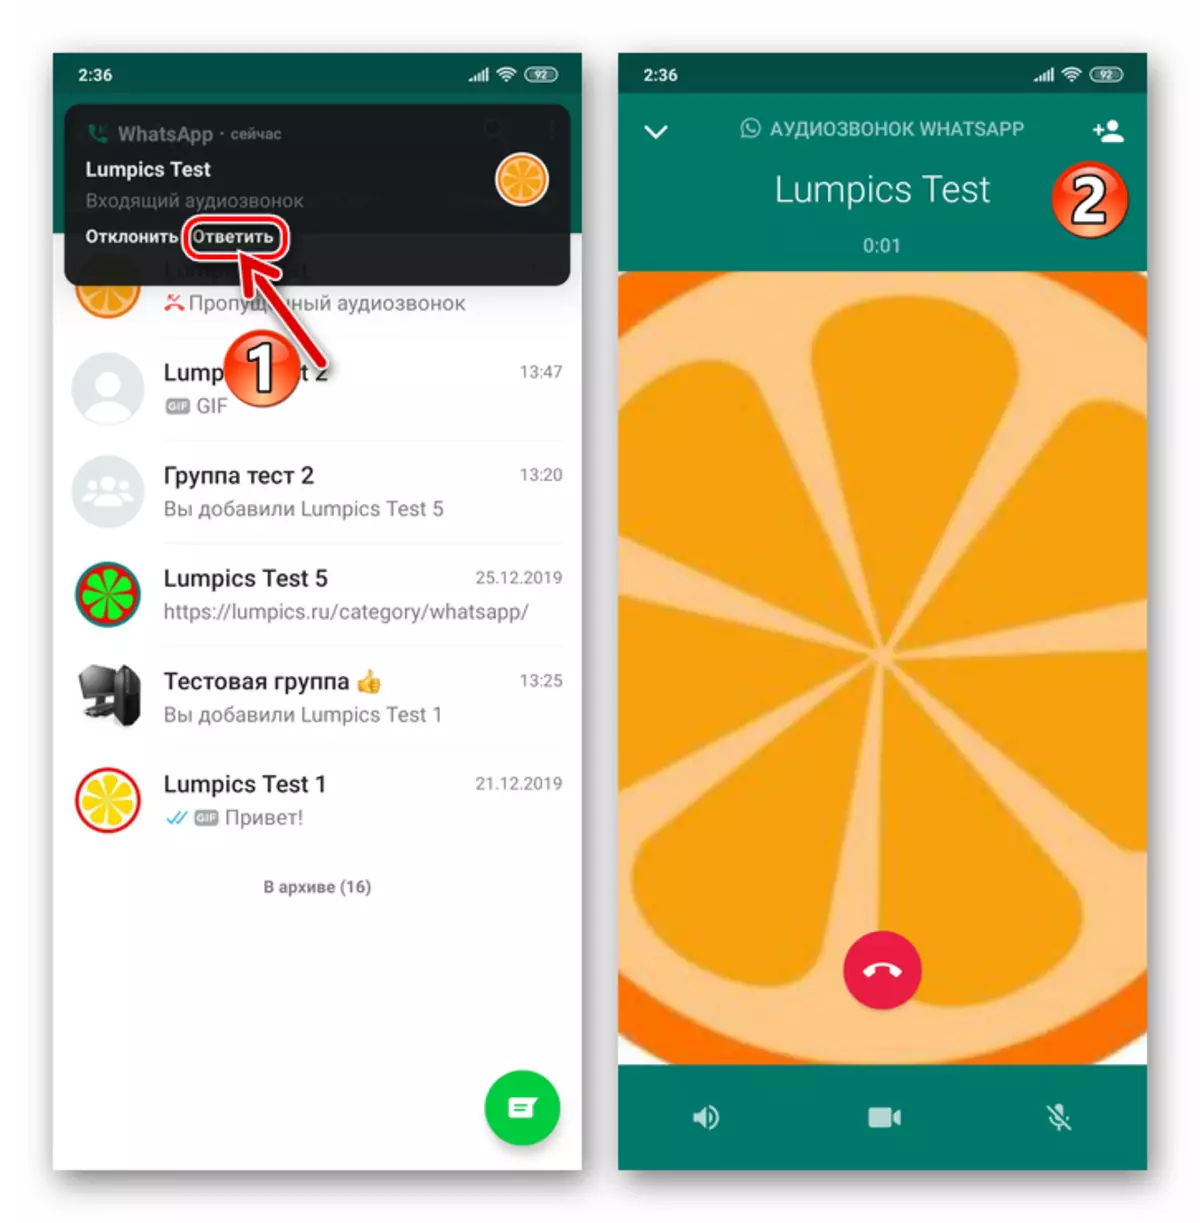 Android साठी व्हाट्सएप संदेशवाहक मध्ये येणार्या ऑडिओ कॉलवर प्रत्युत्तर द्या